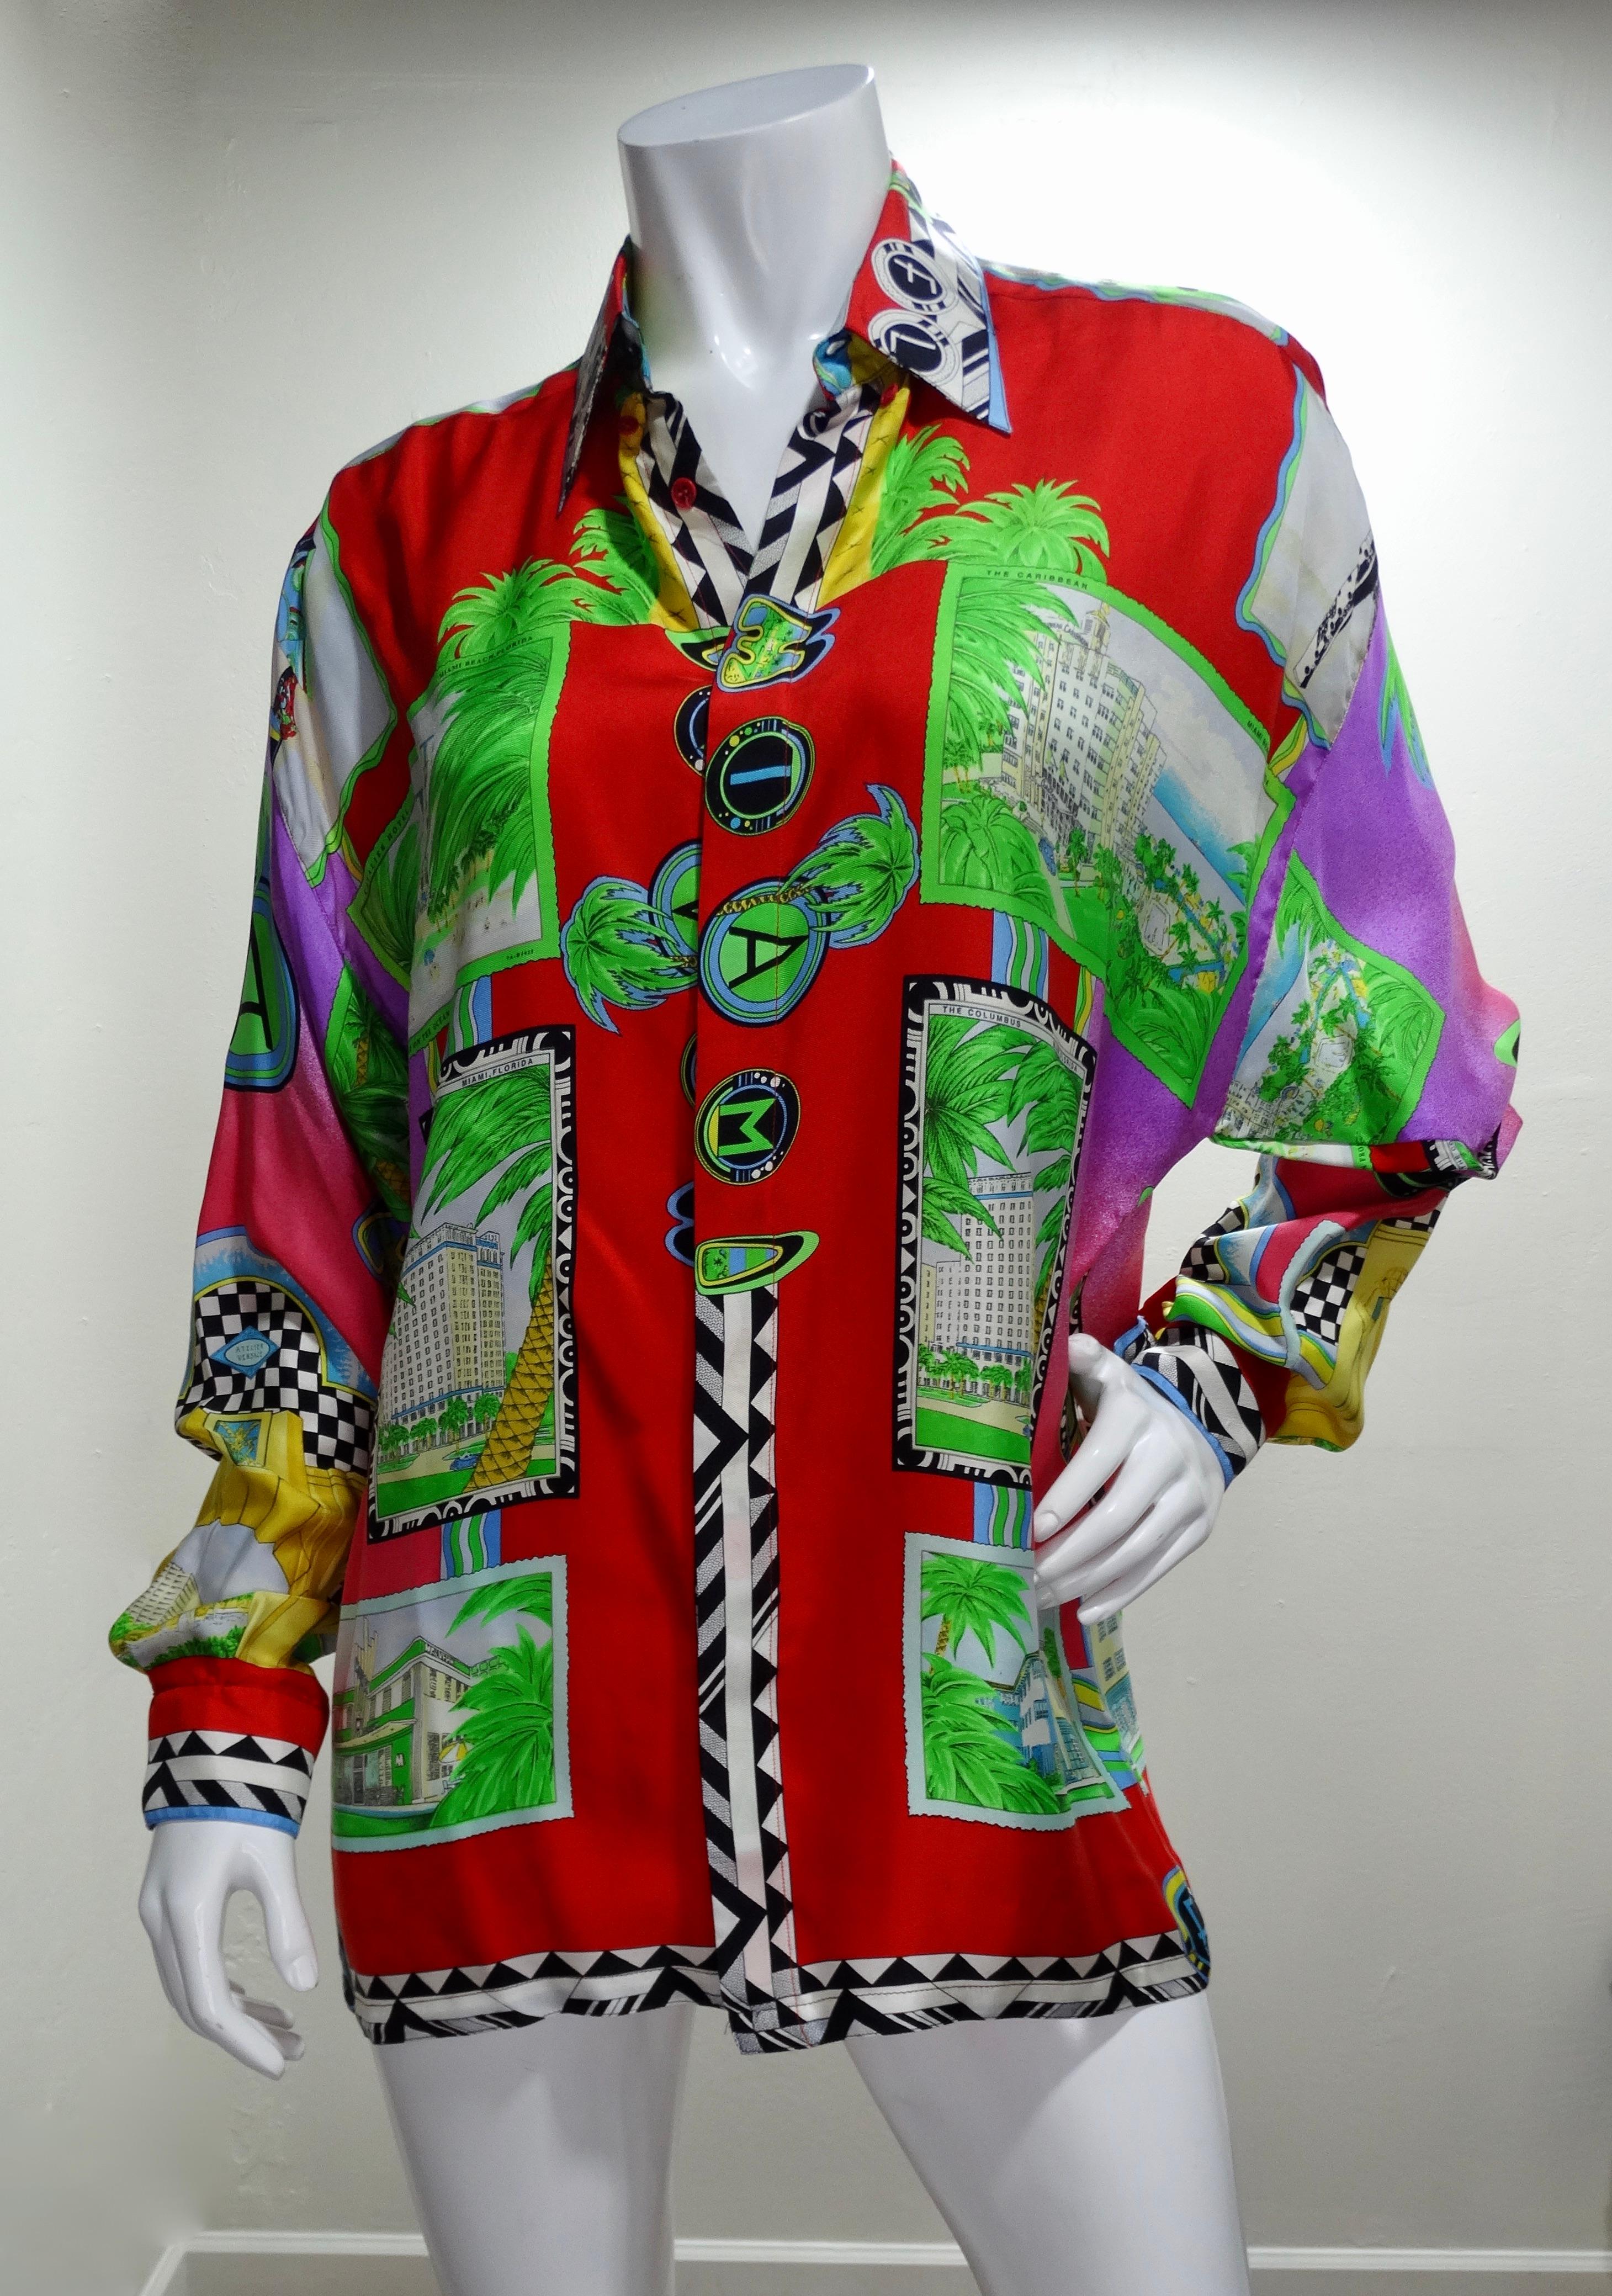 Gianna Versace tout droit sorti des archives ! Datant des années 1990, cette chemise en soie présente une impression inspirée de Miami, avec des couleurs néon ombreuses, des arrangements floraux tropicaux, des cartes postales avec des destinations à